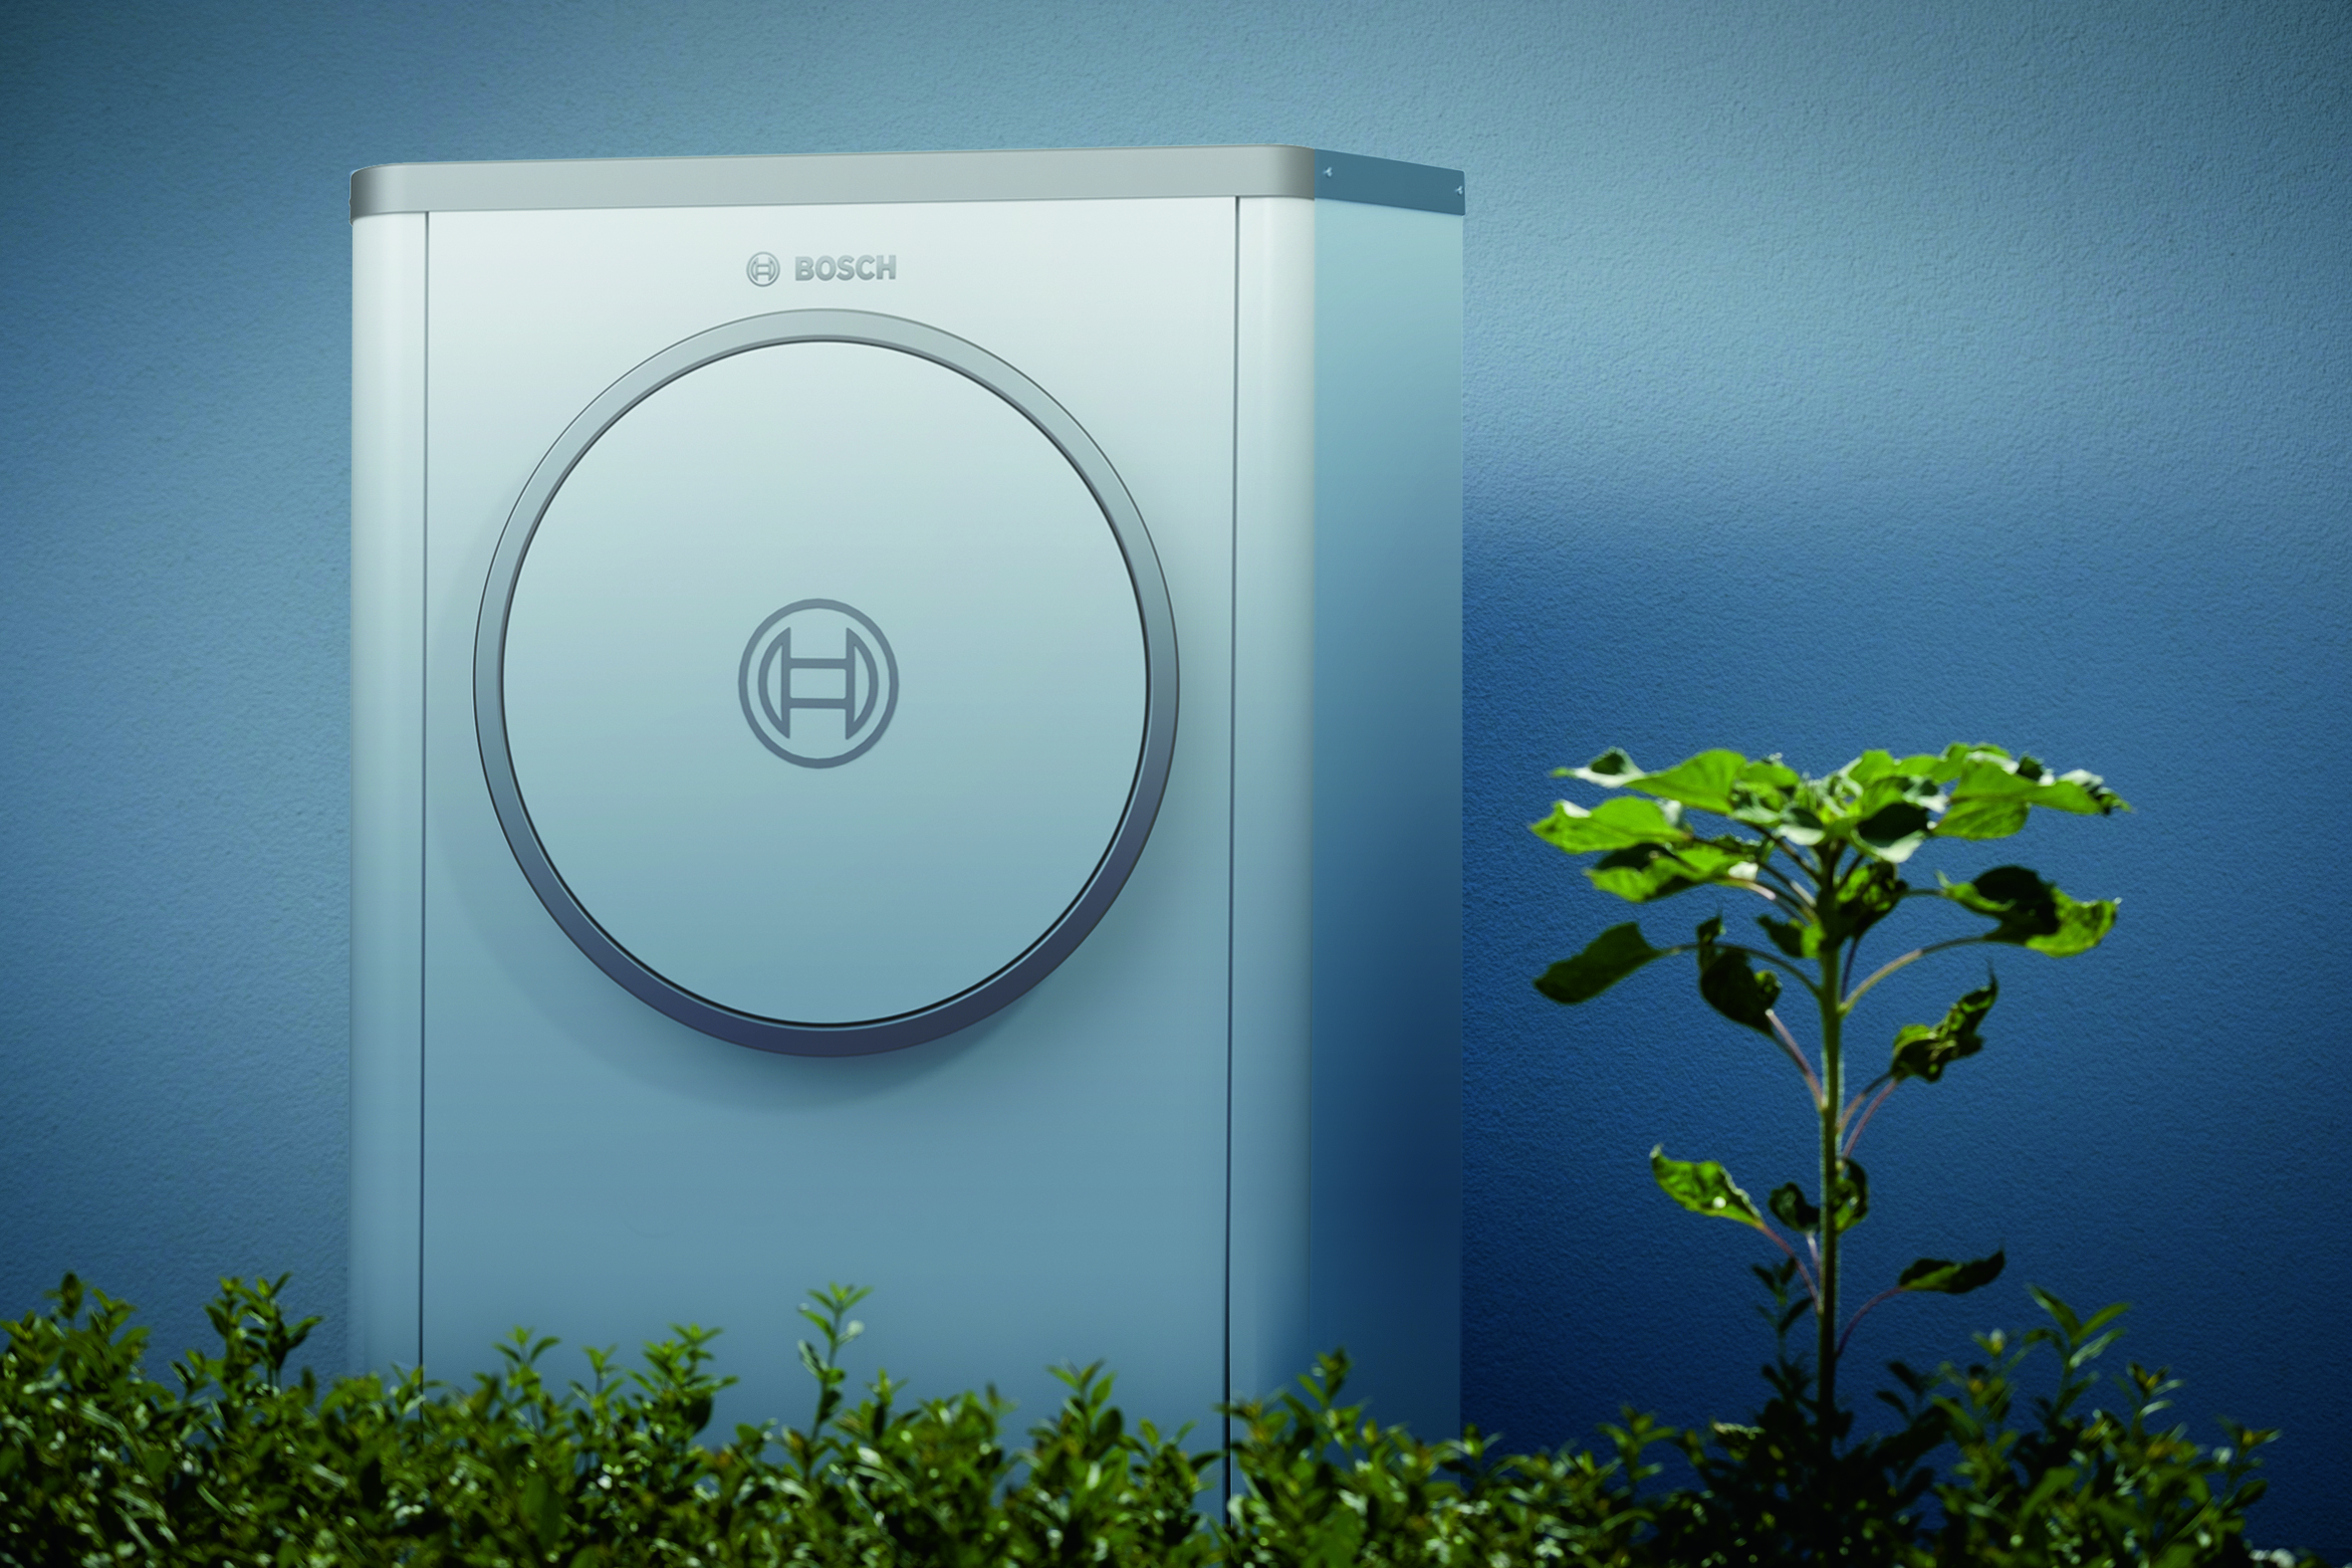 Bosch porta avanti AIoT, elettrificazione e  idrogeno verde 